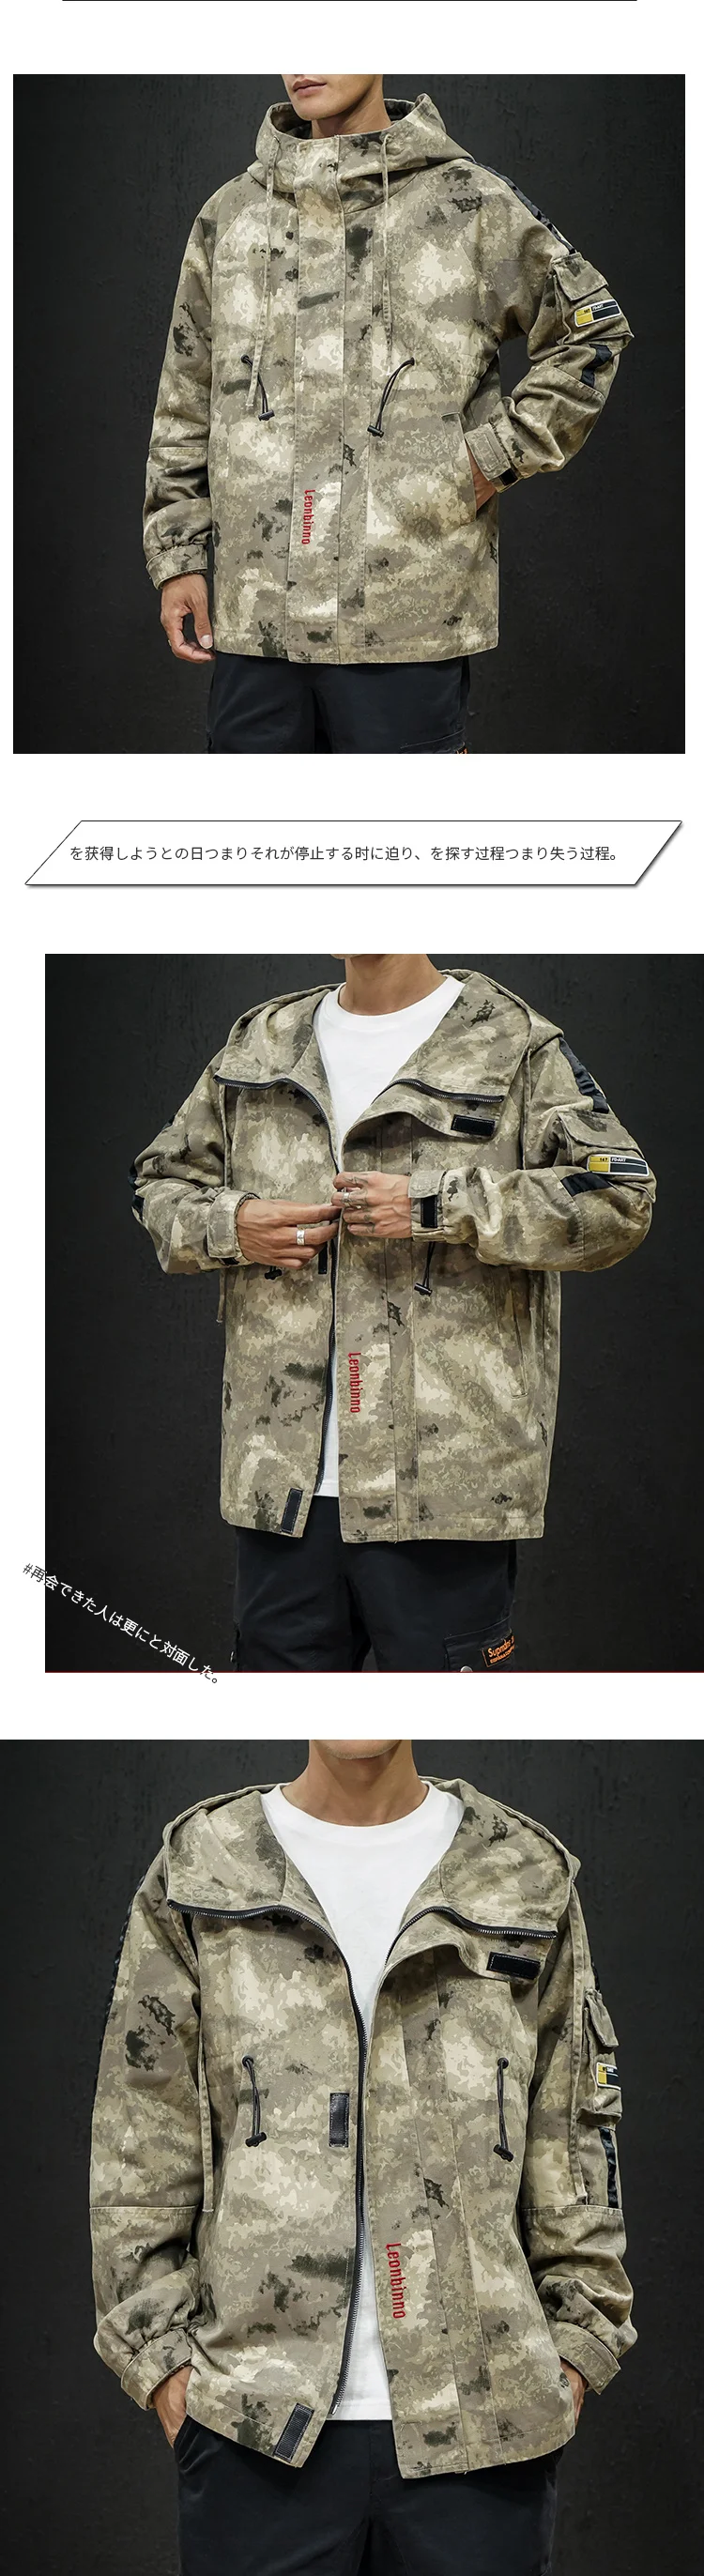 Модная камуфляжная куртка мужская 2019 комбинезоны Японская уличная Толстовка Военный стиль пальто тактическая куртка хип хоп Корейская